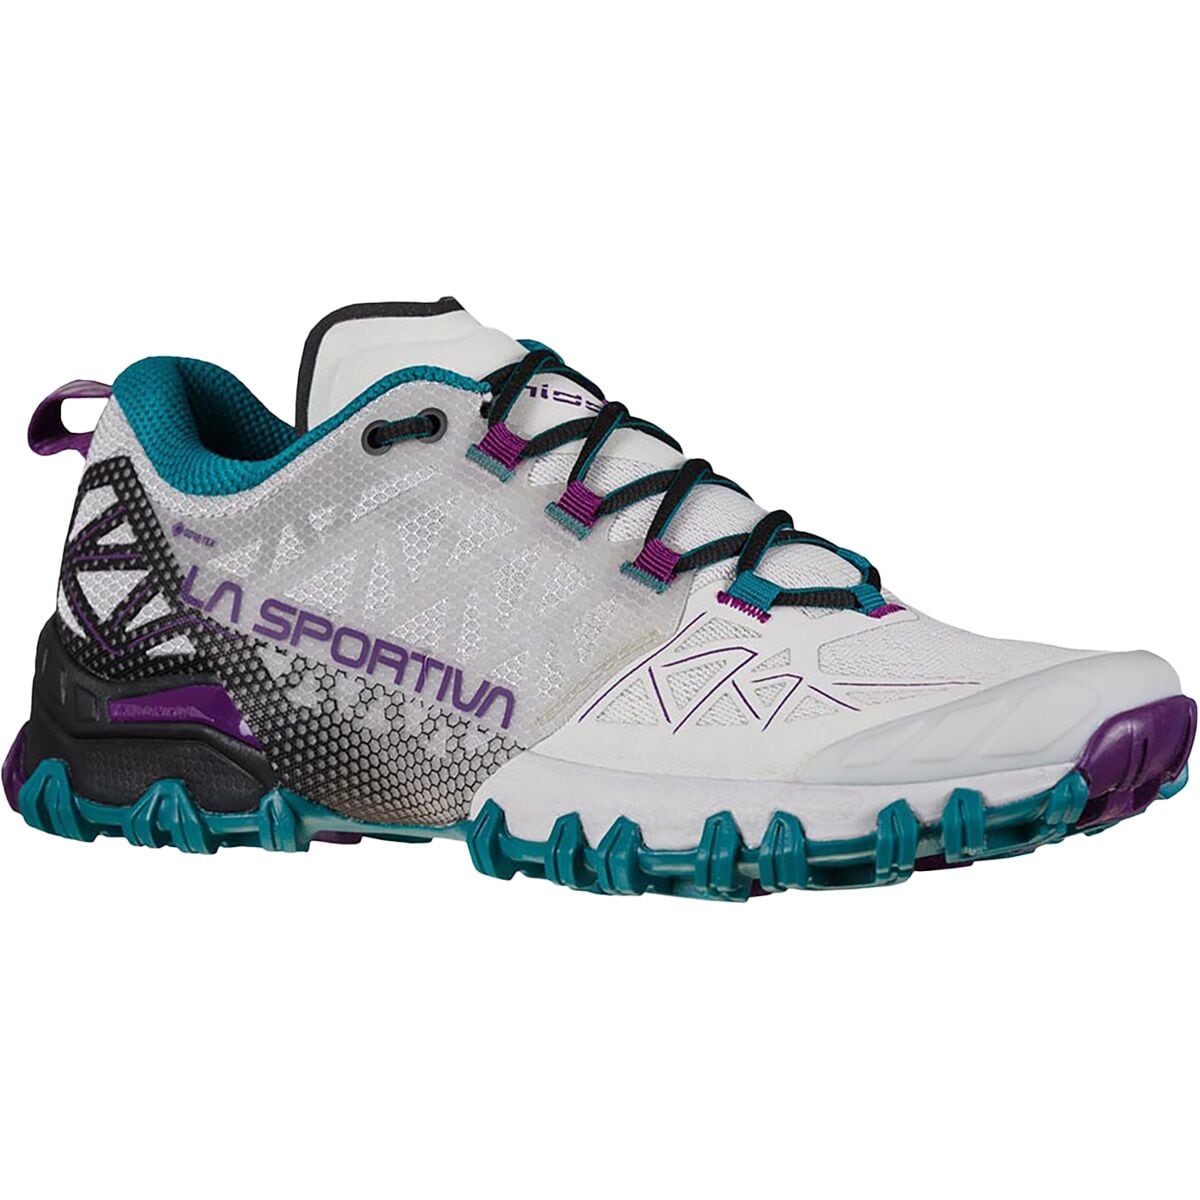 La Sportiva Bushido II GTX Women's Mountain Running® Shoe